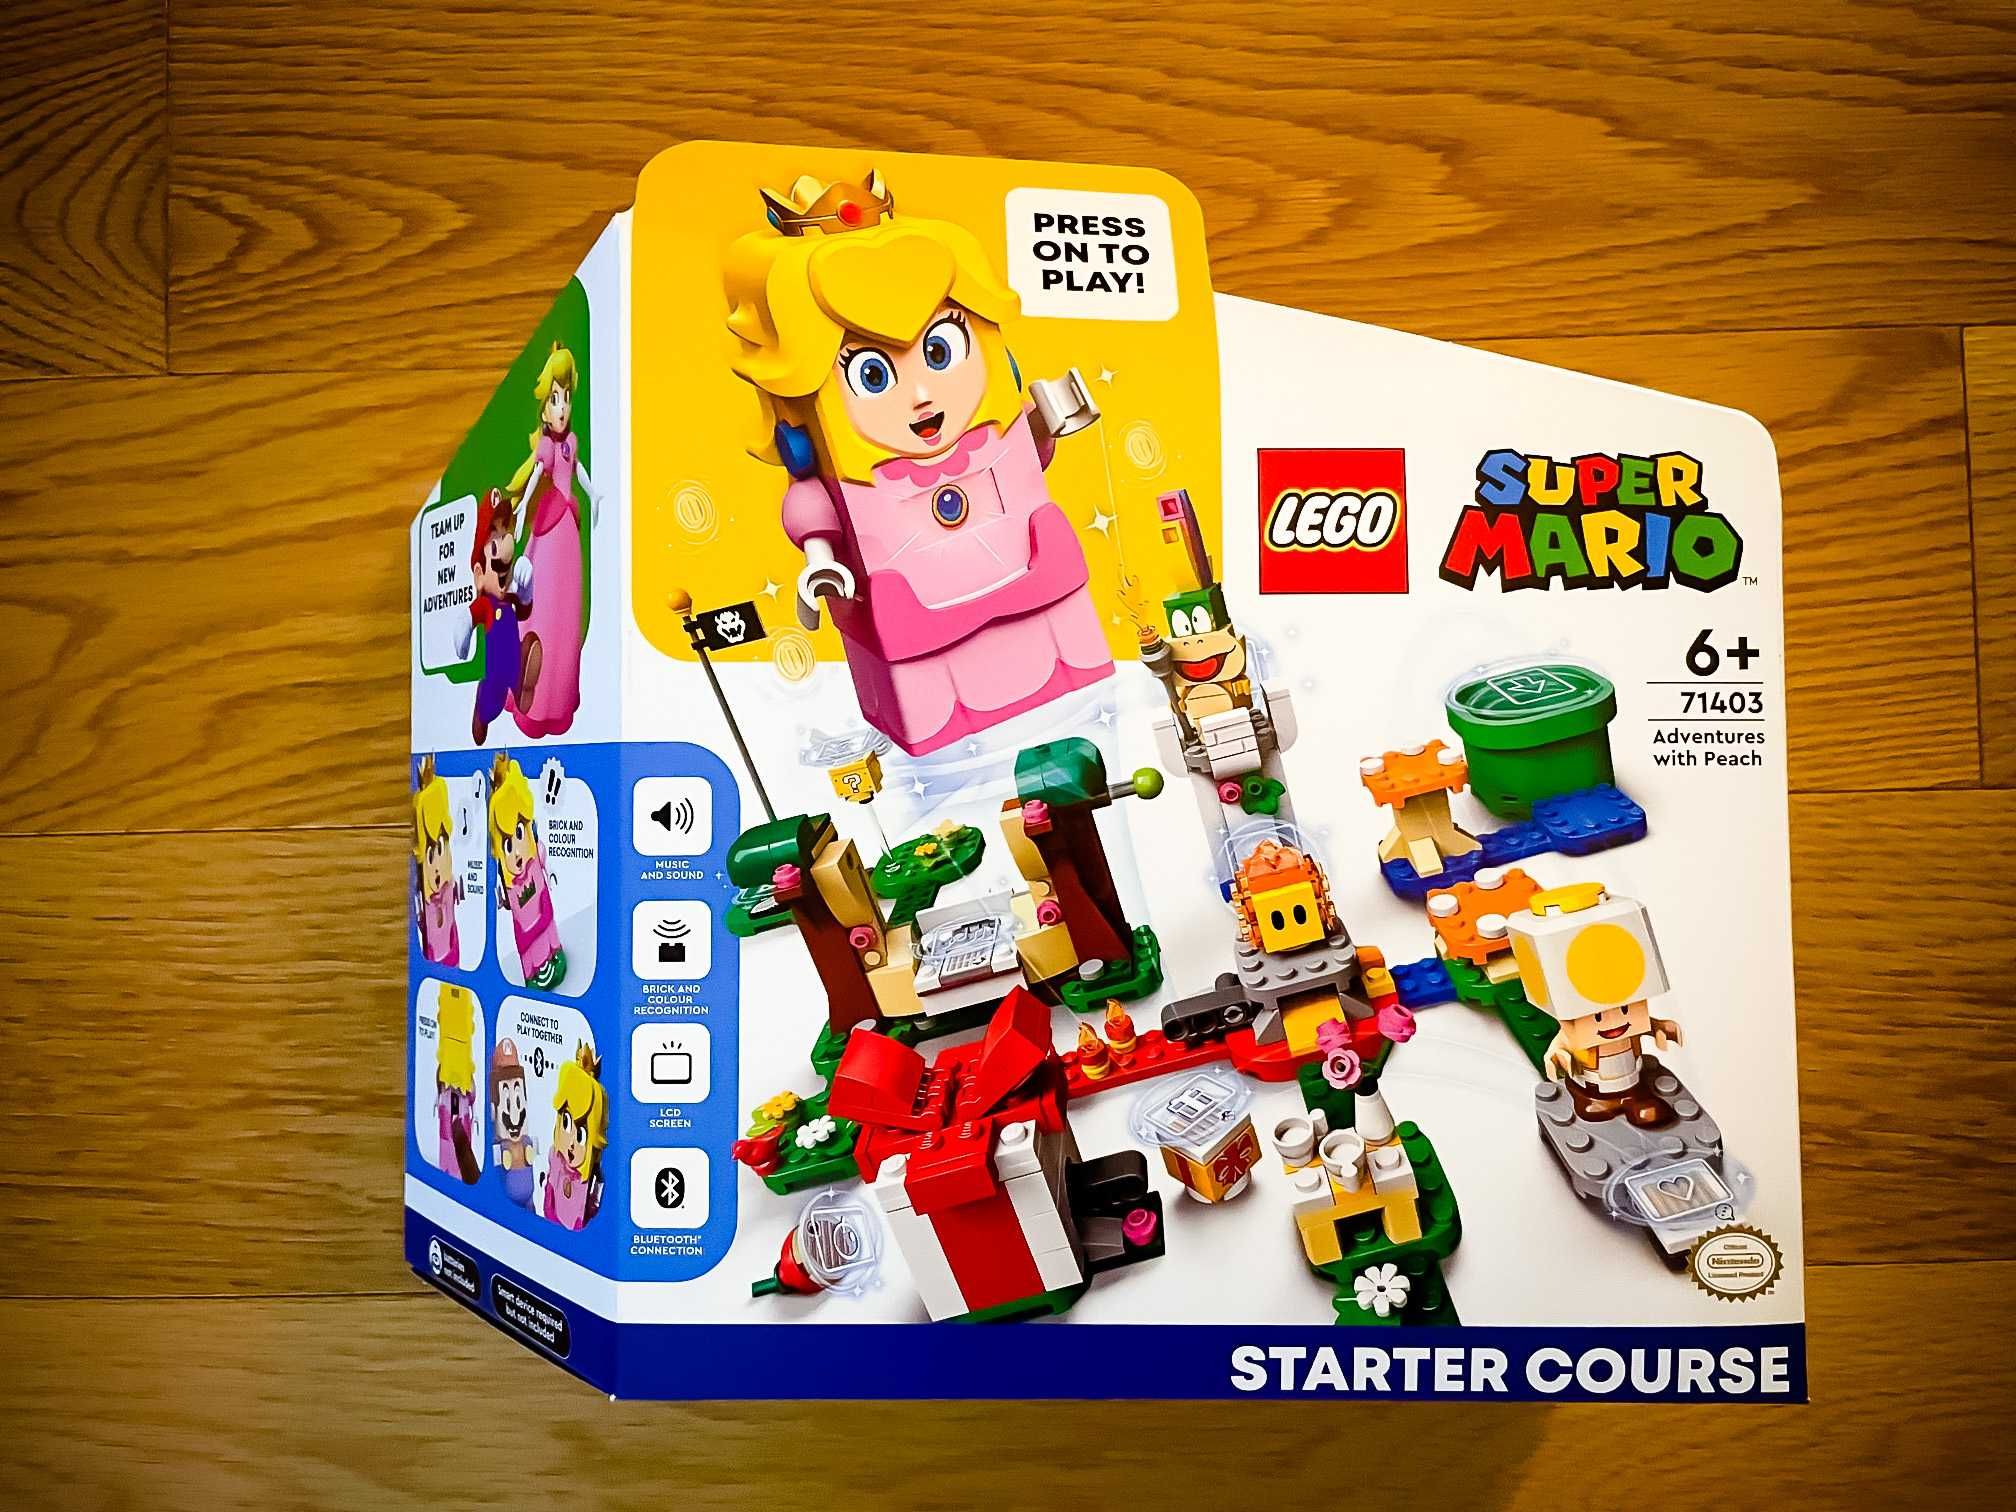 Lego 71403: Super Mario Adventures with Peach Starter Course (novo)